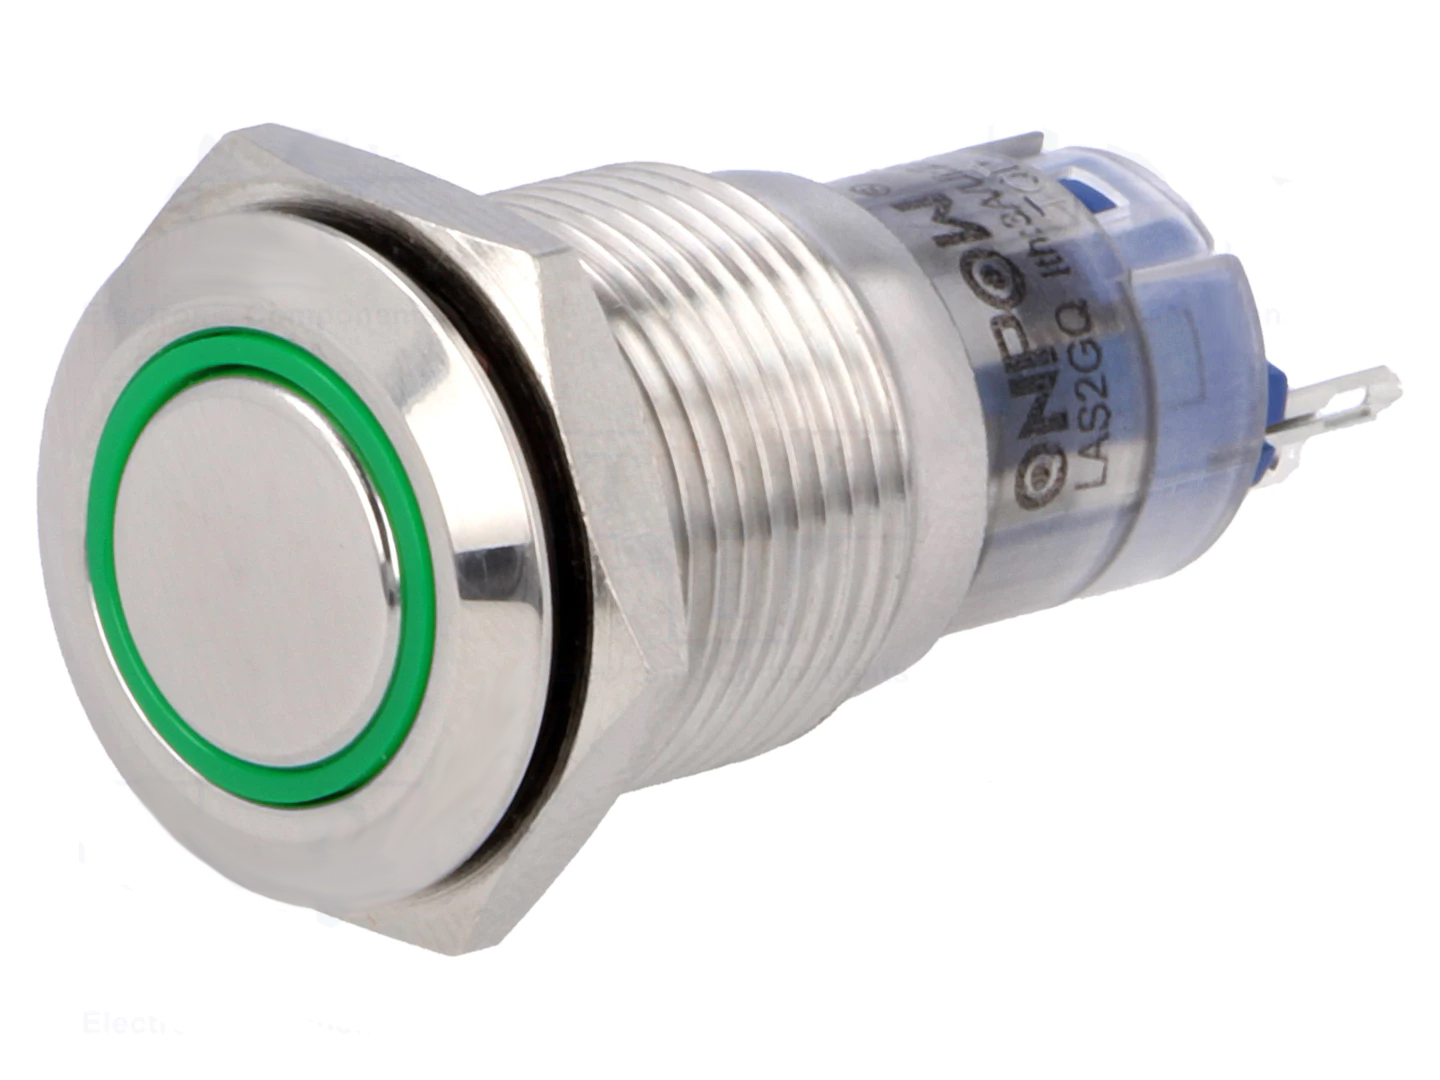 Taster (Wechsler), mit 12V LED-Ring grün, 16mm, 3 A/250V AC, Lötanschlüsse,  IP67